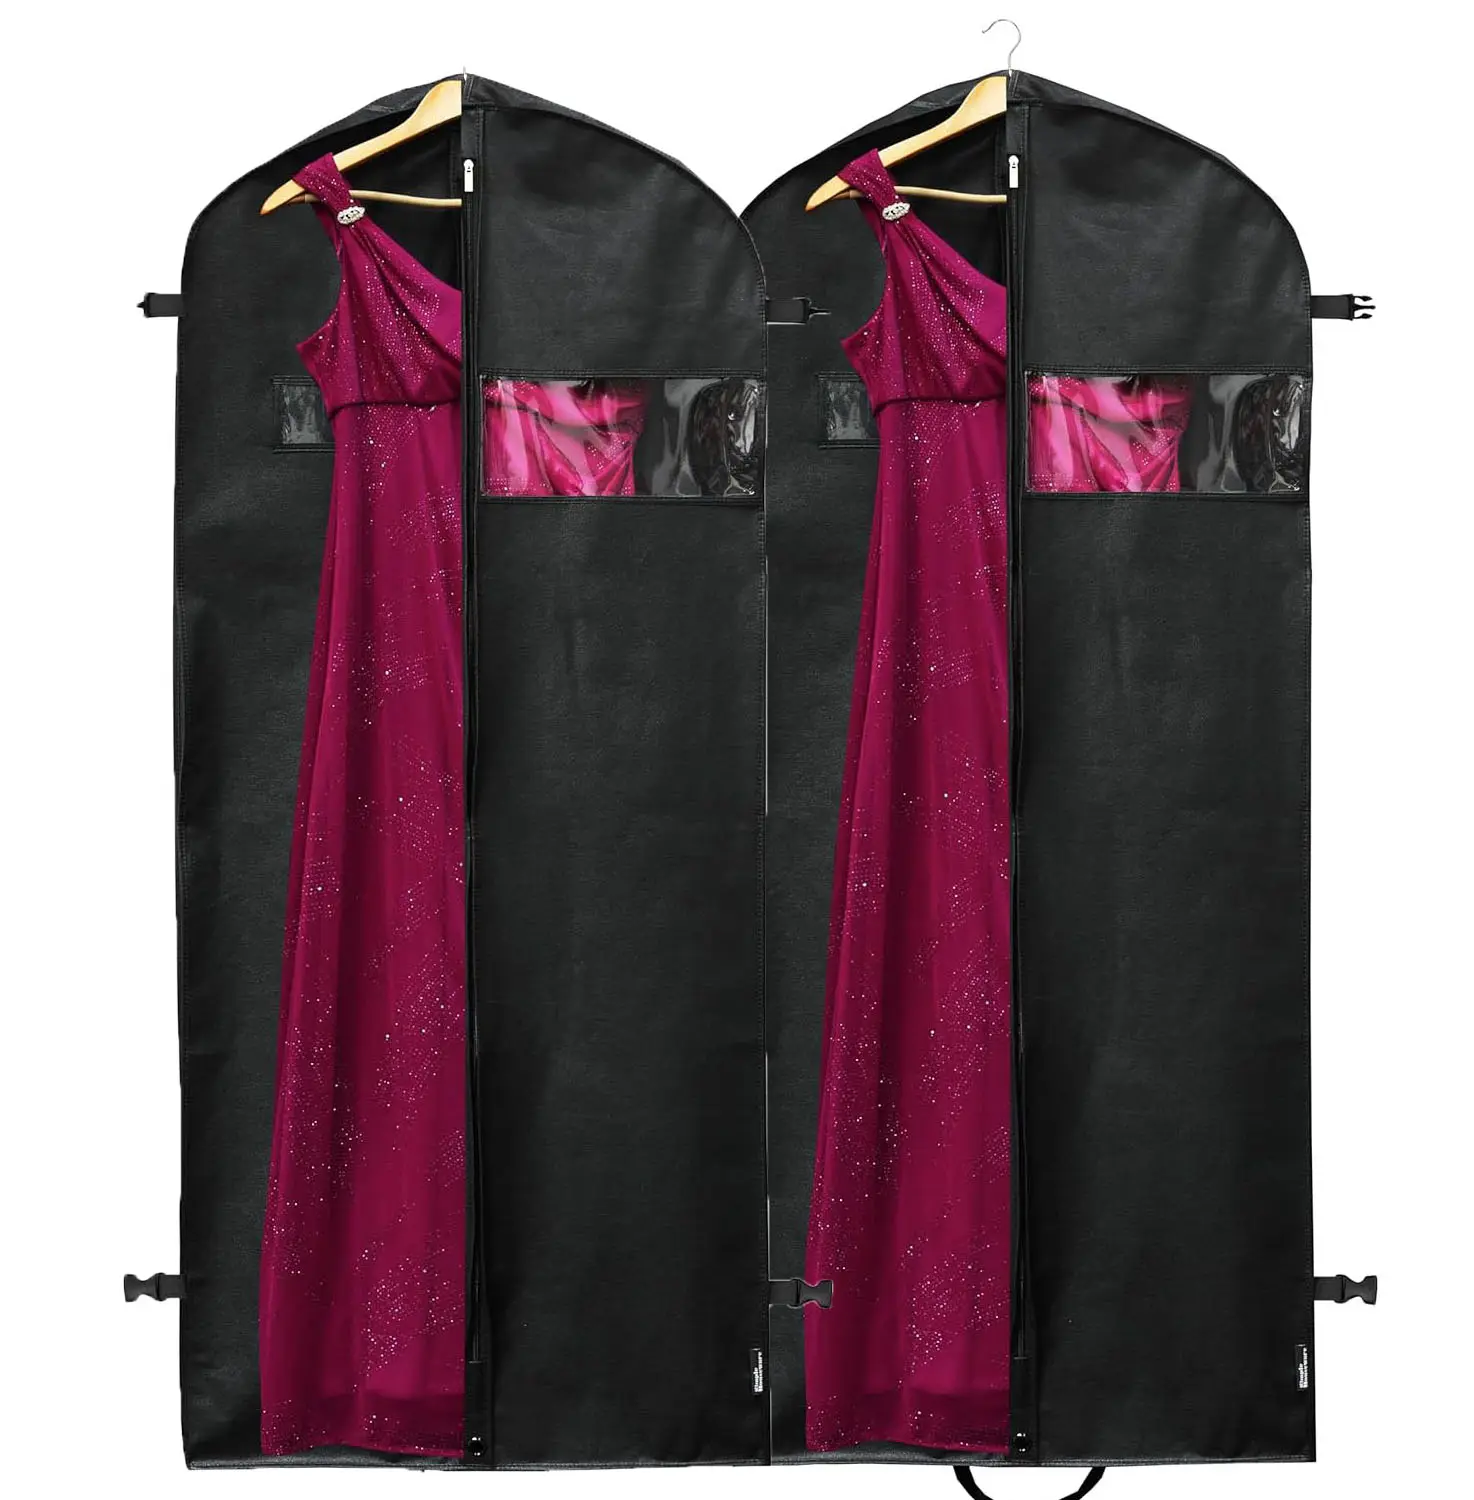 नए उत्पाद 2024 कस्टम लोगो सिंपल हाउस वेयर हैवी ड्यूटी गारमेंट बैग सूट टक्सीडो ड्रेस कोट के लिए काला